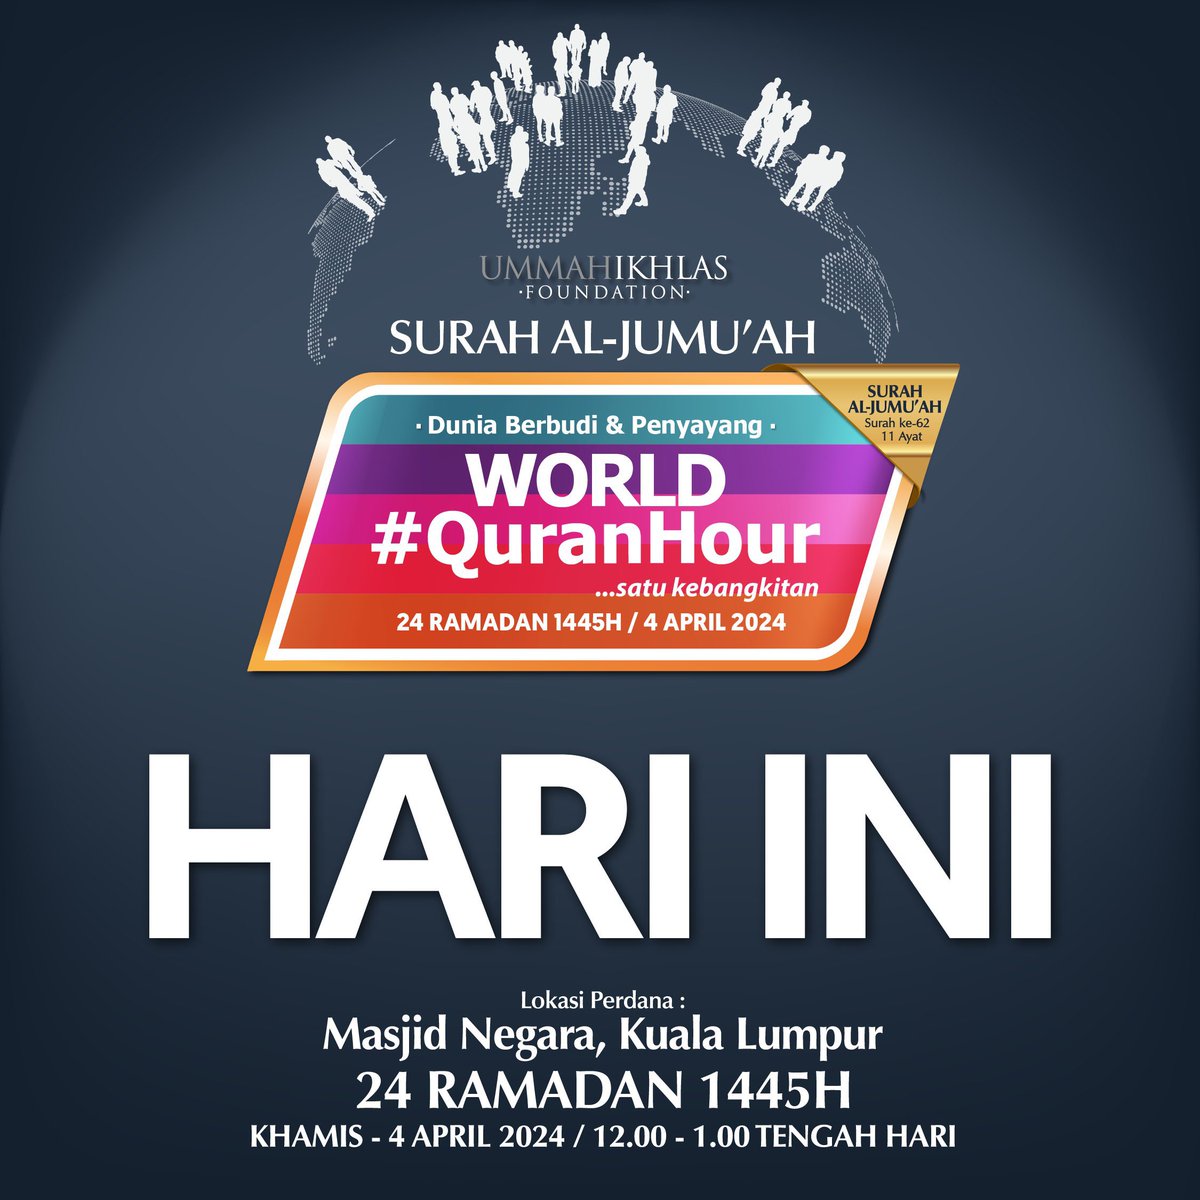 HARI INI! WORLD #QURANHOUR

Bersama kita gemakan Surah Al-Jumu'ah pada hari ini jam 12-1 tengah hari bertempat di Masjid Negara, Kuala Lumpur

World #QuranHour
Ummah #GrandReset
#SurahAlJumuah